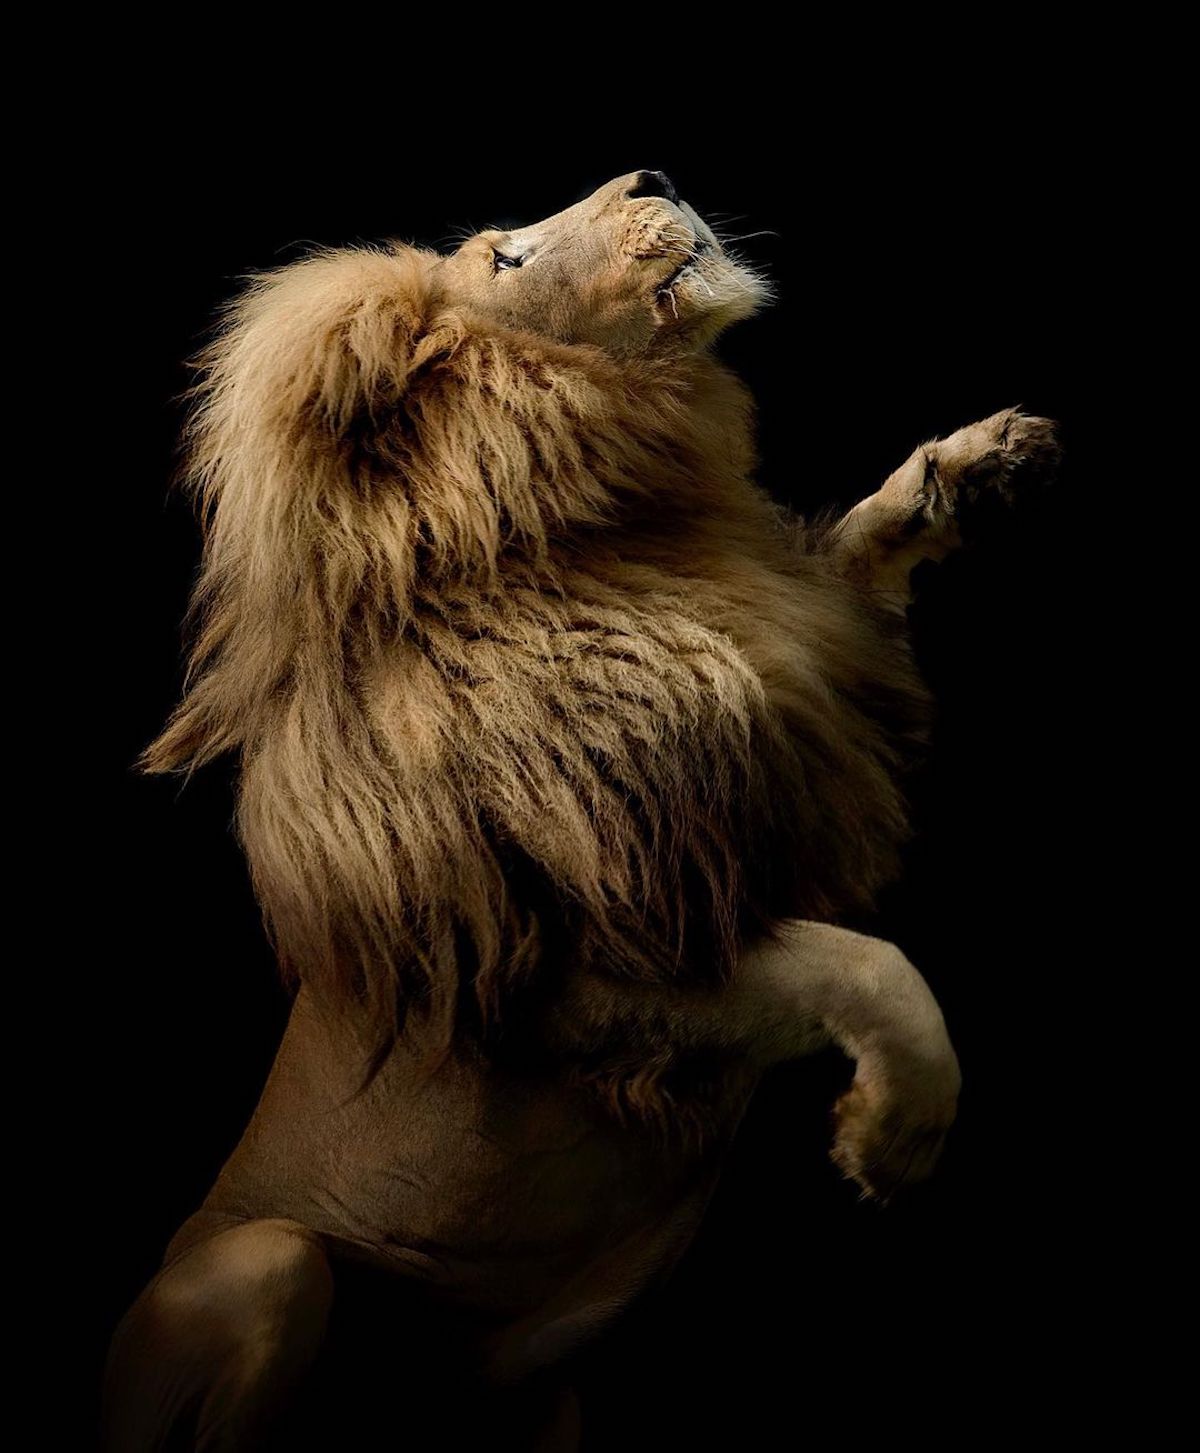 Fotos de leones por Simon Needham